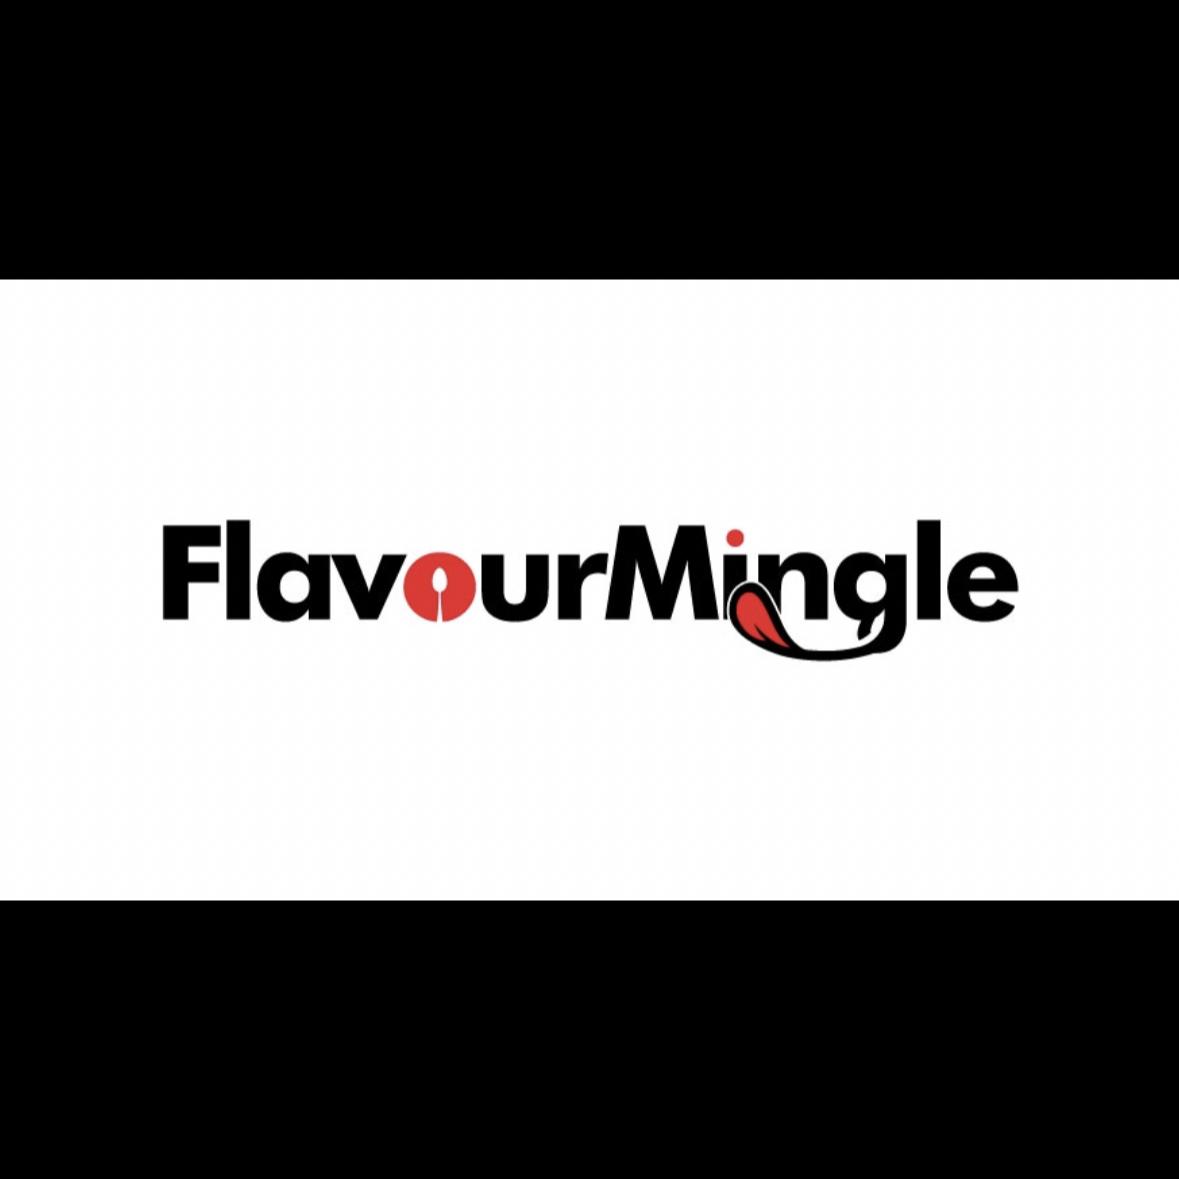 FlavourMingle 